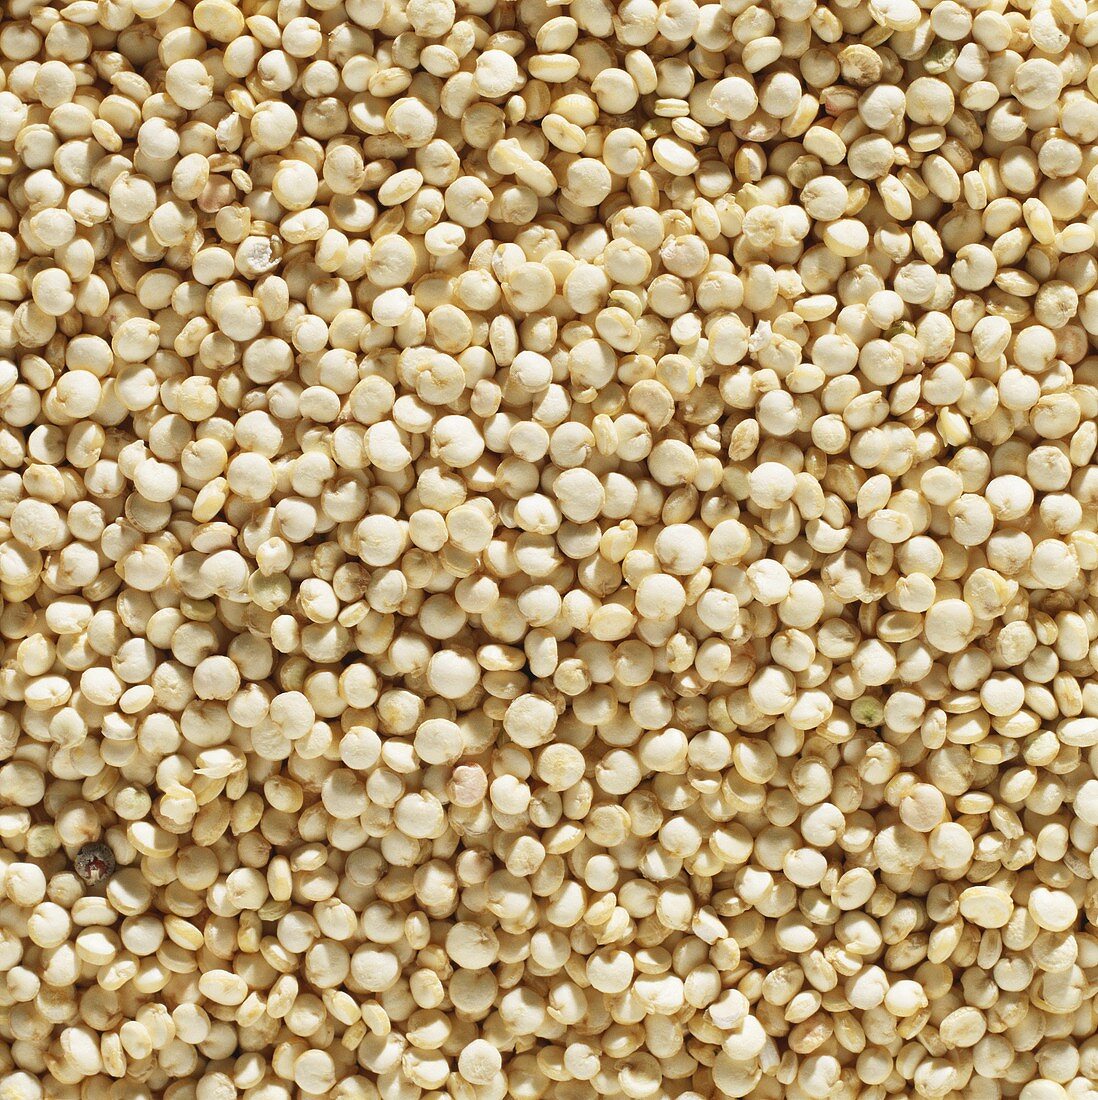 Quinoa (filling the picture)